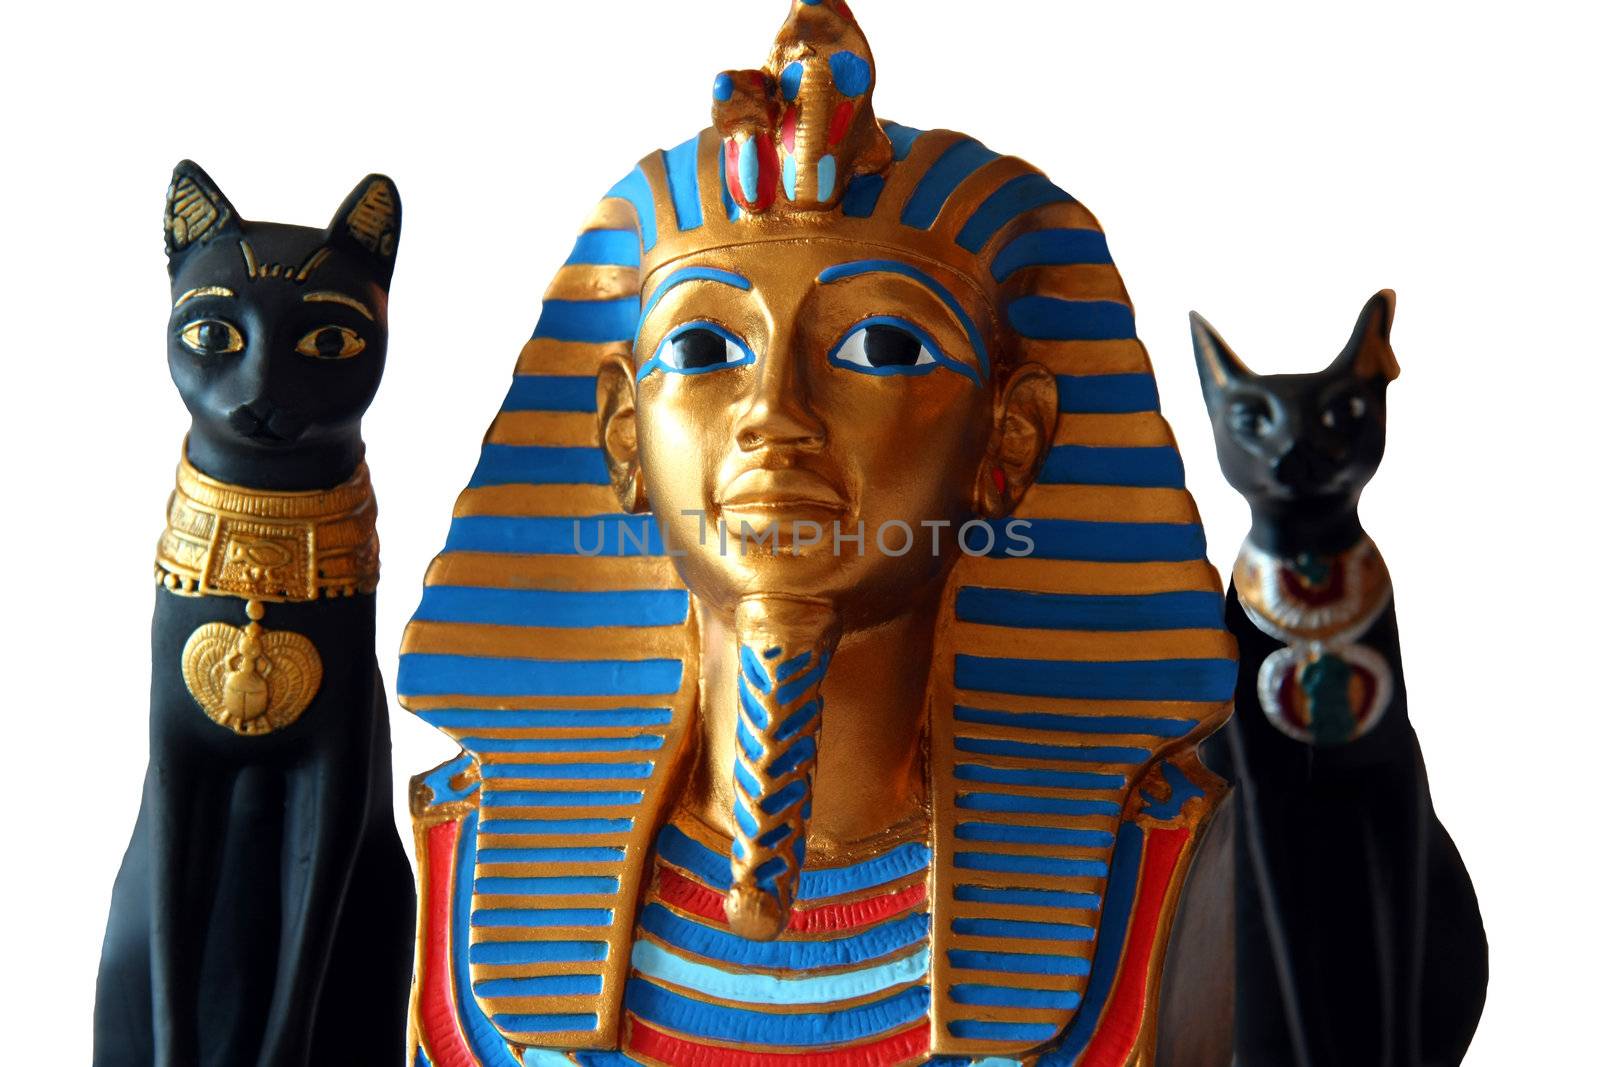 Egyptian miniature cats and pharaoh